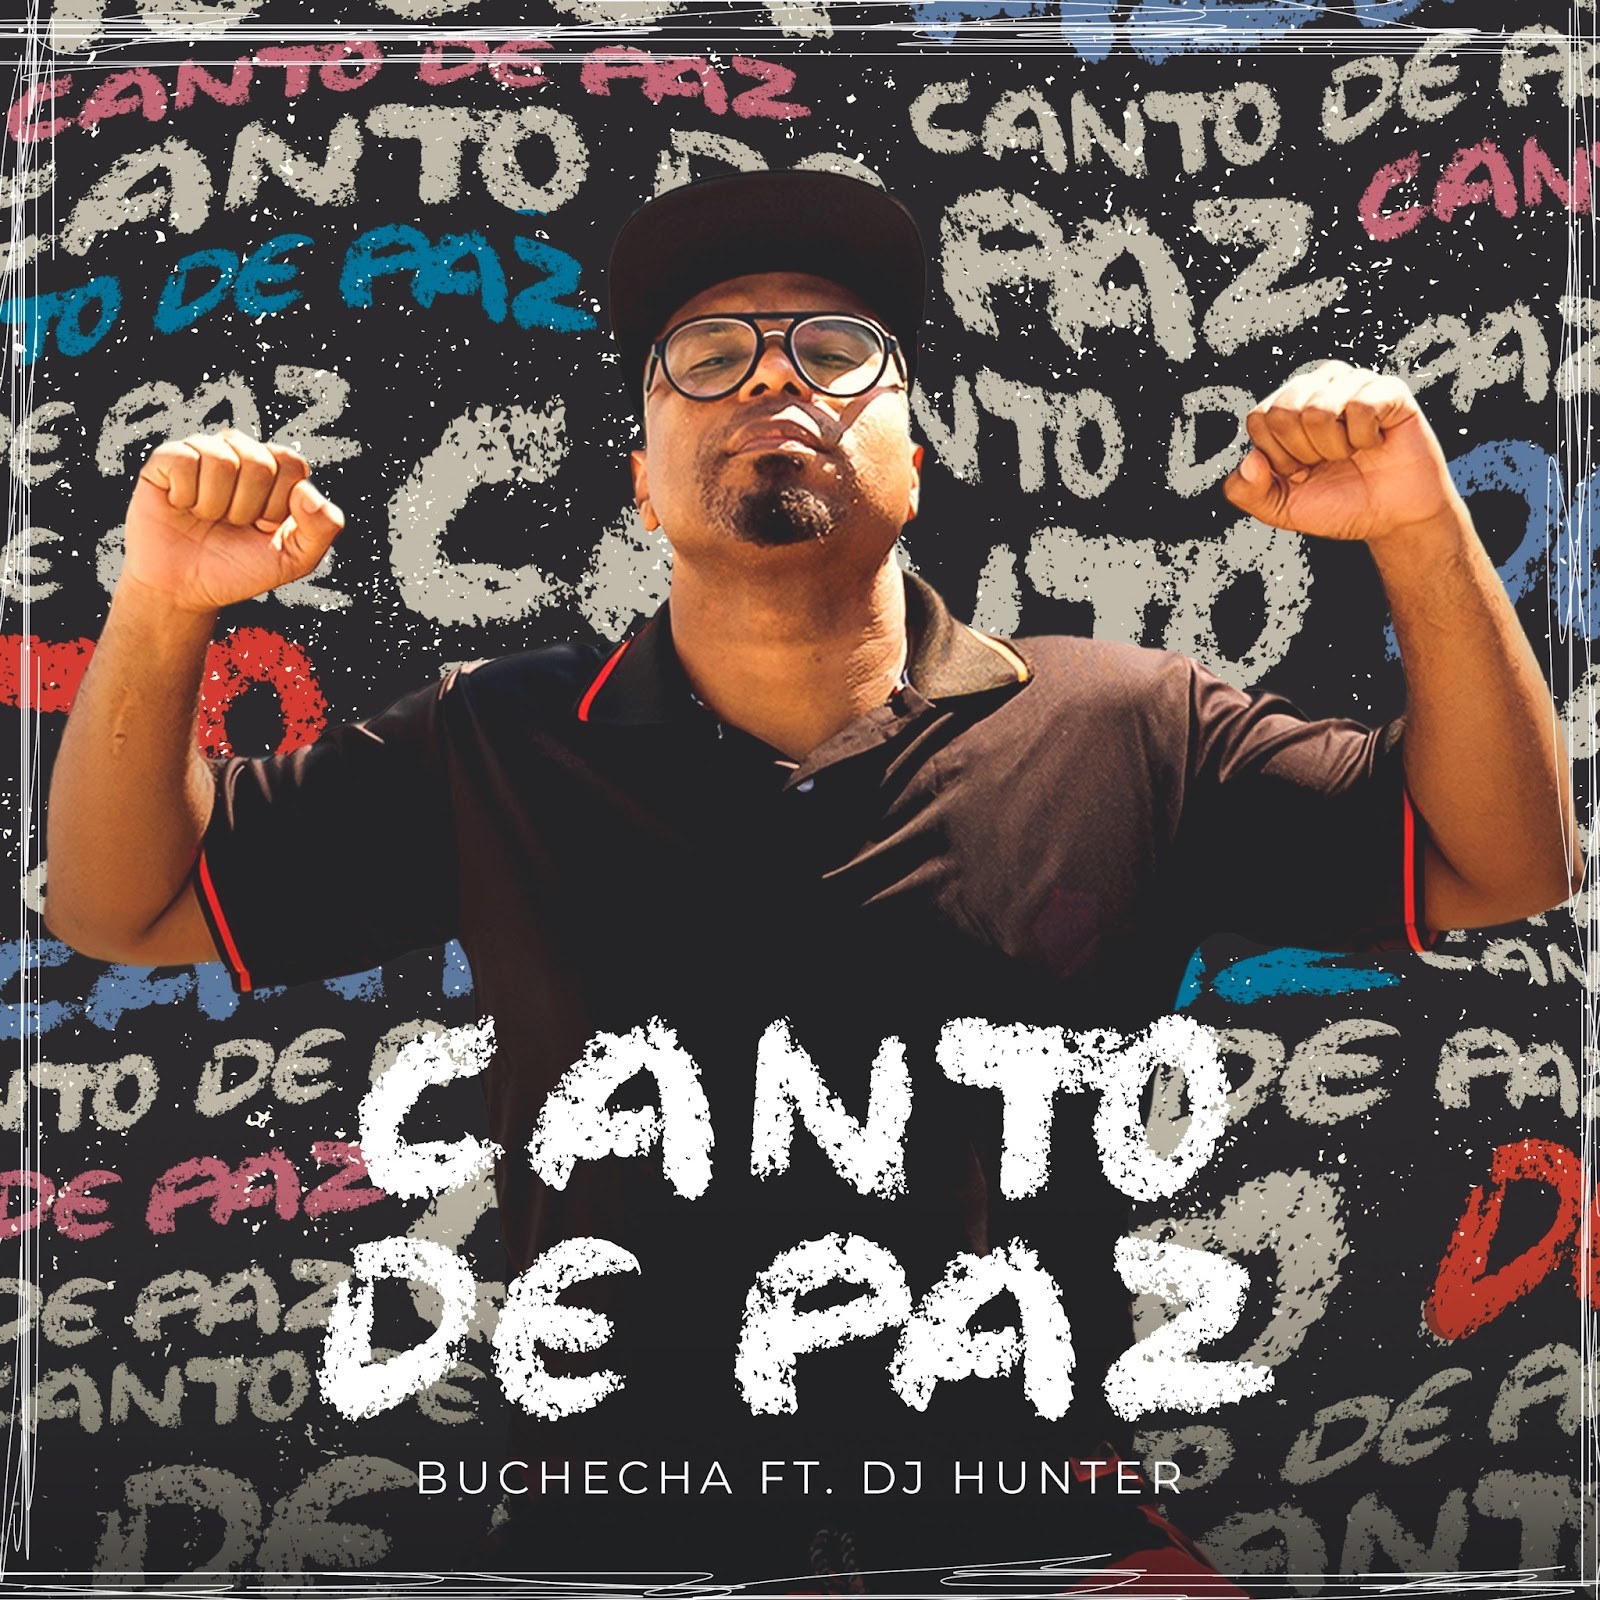 Buchecha propaga 'Canto de paz', álbum com funks inéditos gravados com DJ Hunter